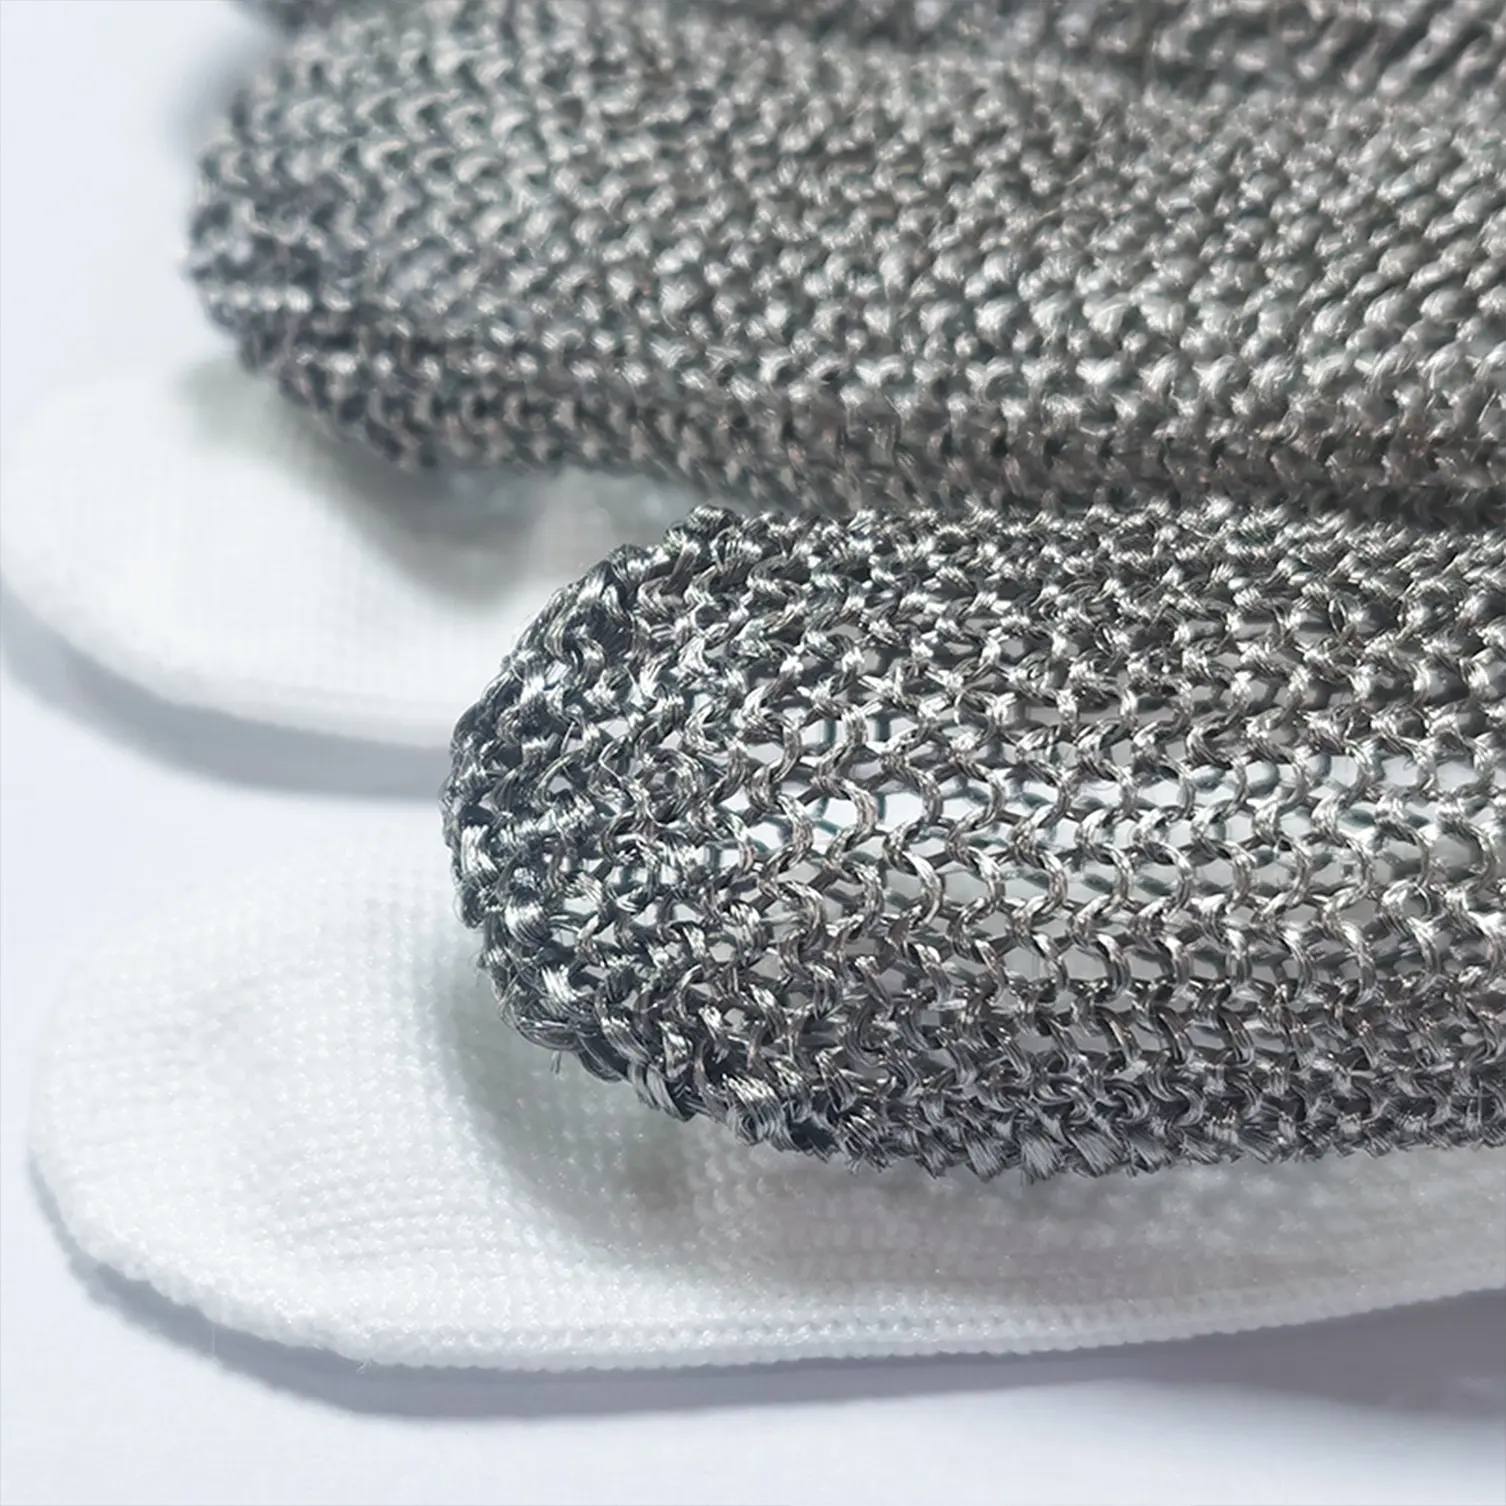 BSP A9 guantes de acero inoxidable anticorte ostras carnicero seguridad corte resistente alambre de acero inoxidable guantes de metal